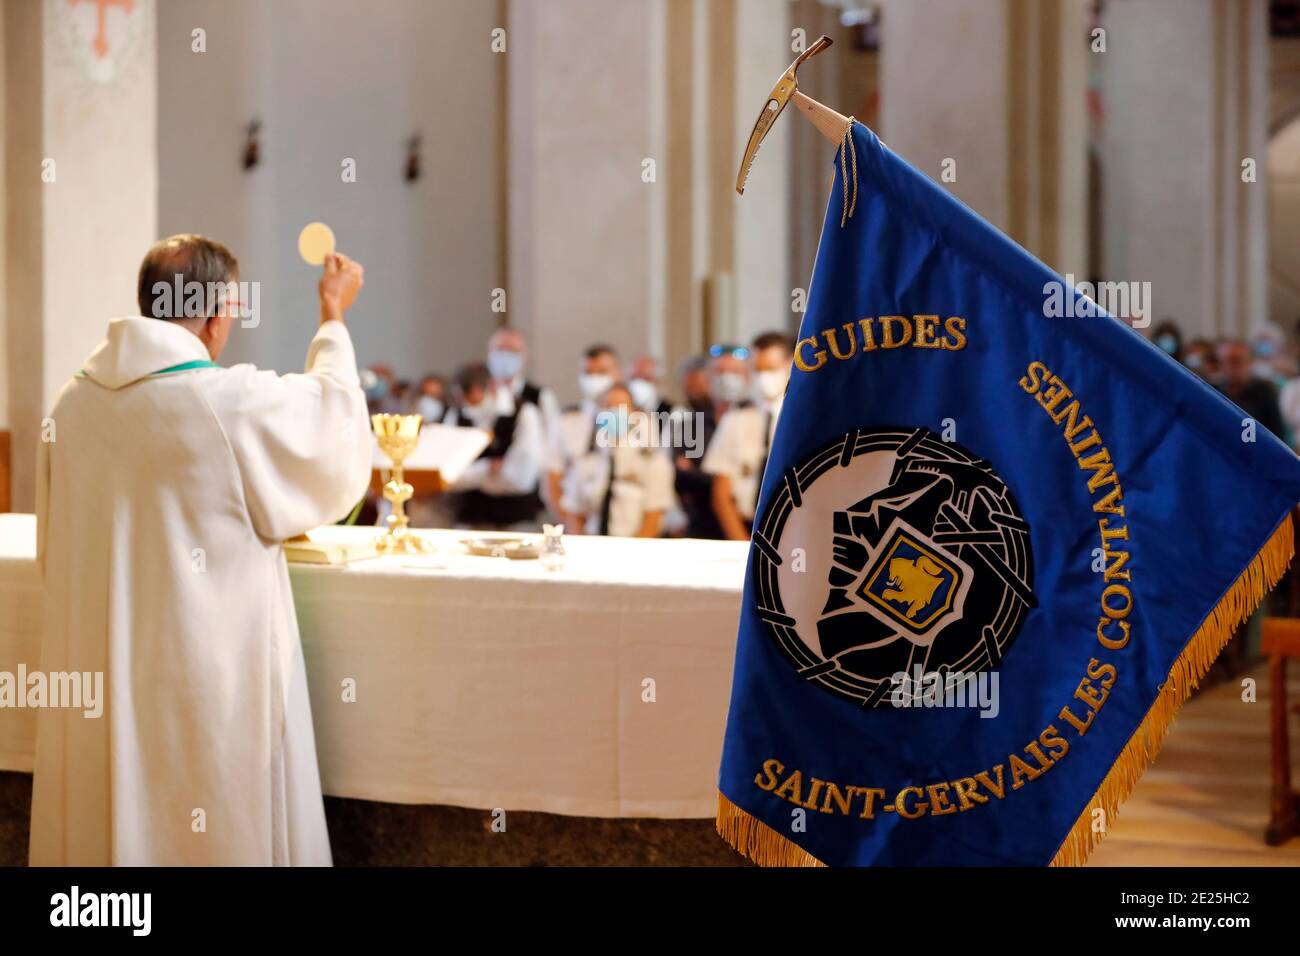 Catholic church during covid-19 epidemic. Sunday mass. Eucharistic celebration.  Saint Gervais. France. Stock Photo